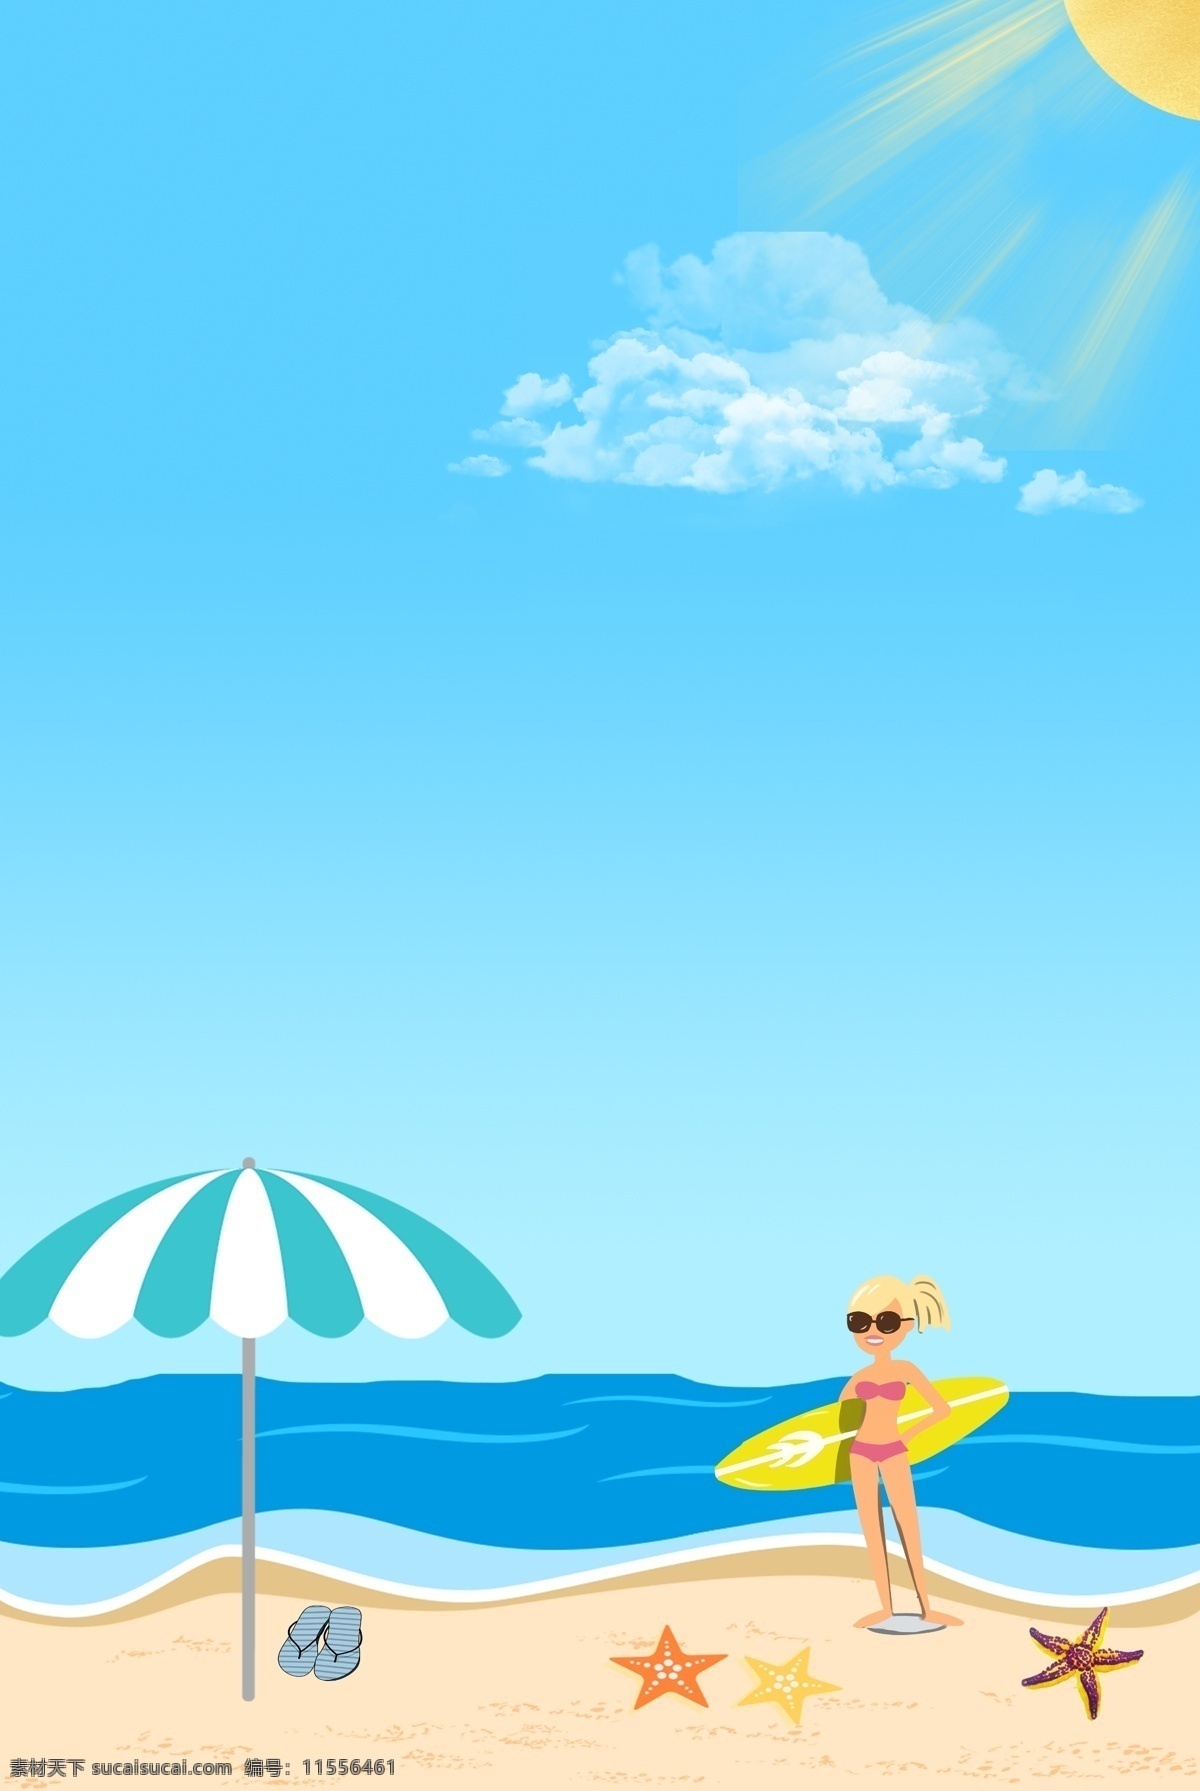 夏日 海滩 冲浪 少女 背景 女孩 沙滩 伞 太阳 白云 天空 海星 banner